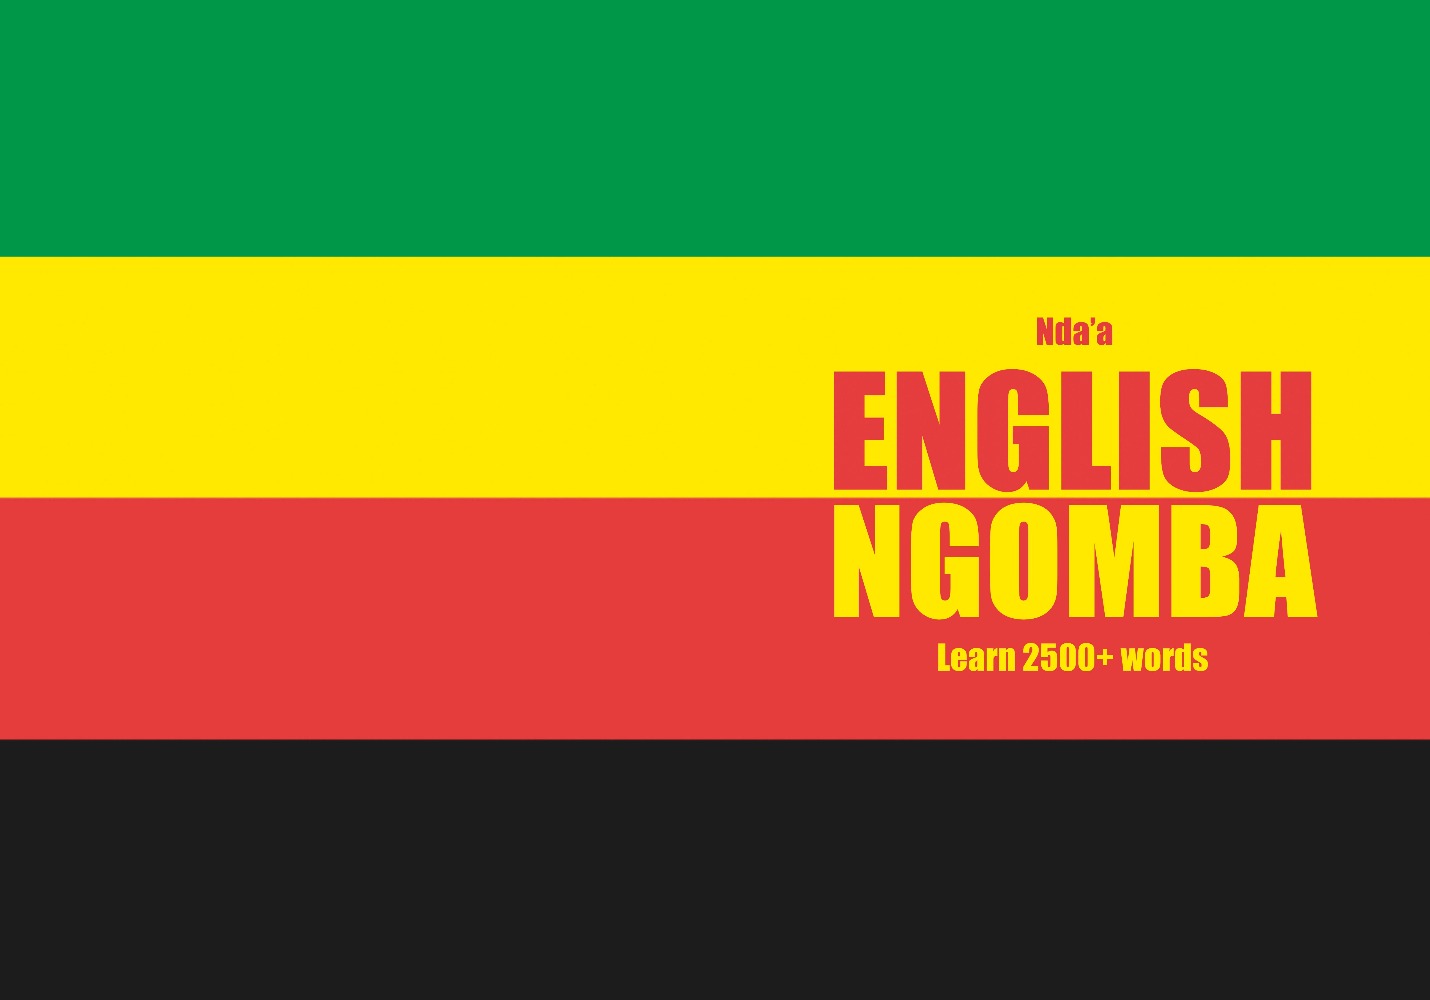 Ngomba language learning notebook cover